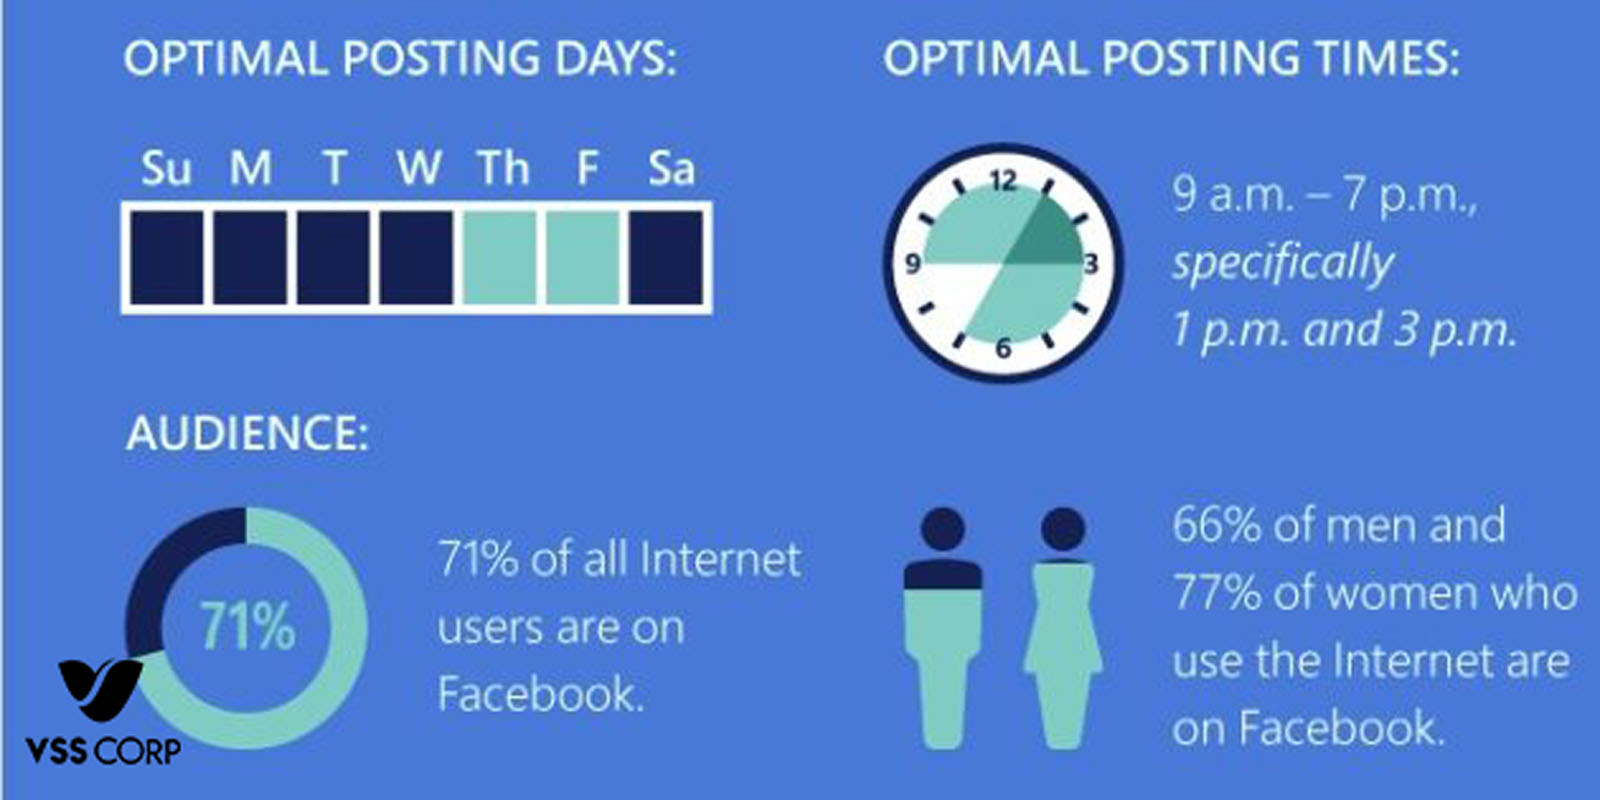 ”Làm thế nào xác định được khung giờ vàng đăng bài cho cách chạy quảng cáo facebook hiệu quả theo giờ để tăng tương tác cho bài viết và tăng hiệu suất chuyển đổi?”